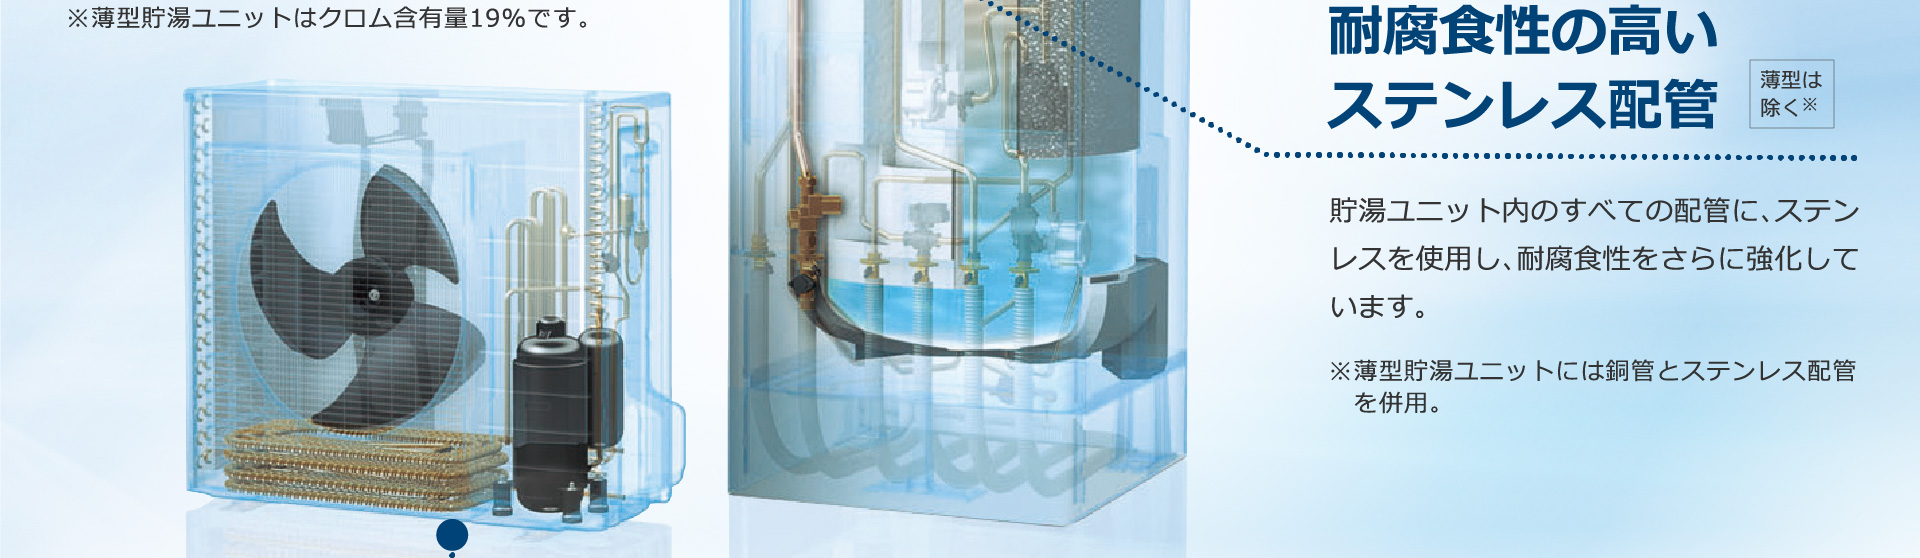 耐腐食性の高いステンレス配管。薄型は除く※貯湯ユニット内のすべての配管に、ステンレスを使用し、耐腐食性をさらに強化しています。※薄型貯湯ユニットには銅管とステンレス配管を併用。